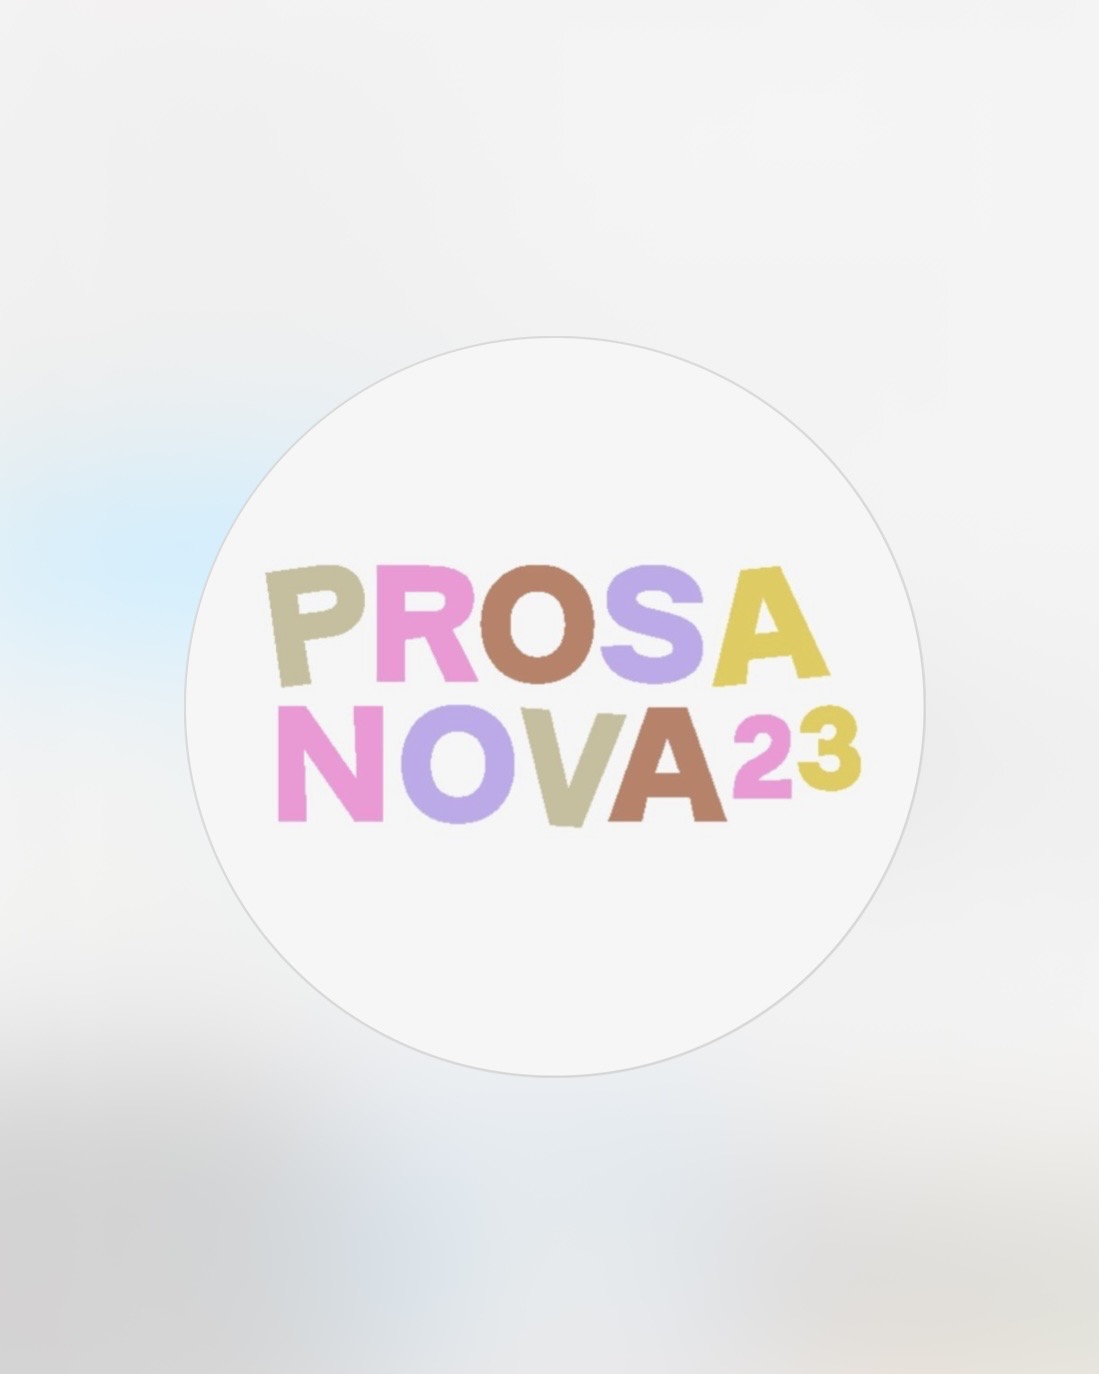 In Pastellfarben steht vor weißlichem Hintergrund: PROSANOVA23.